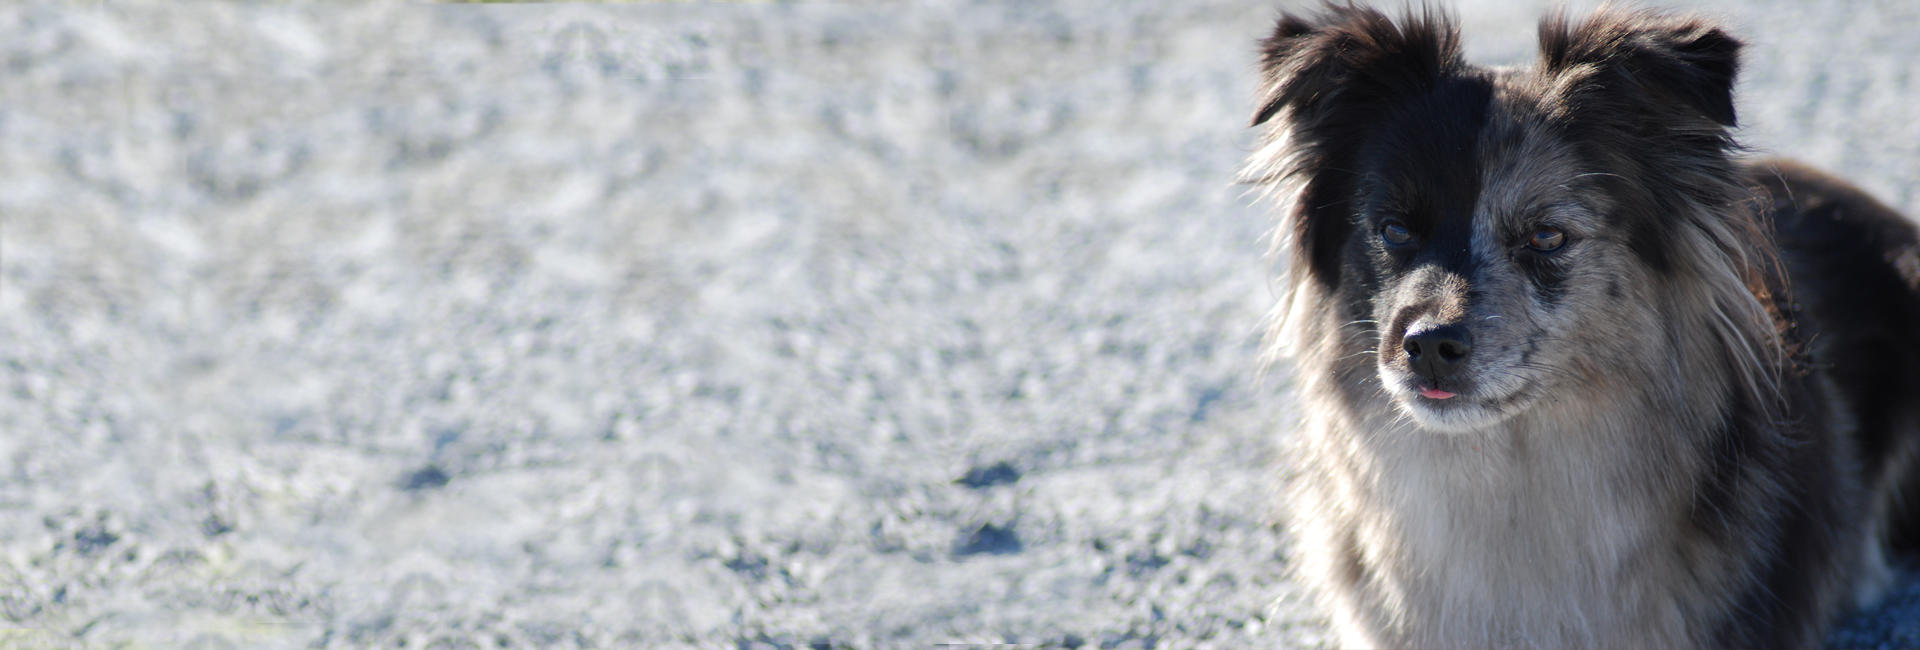 Pyreneisk gjeterhund med korthåret hode - profilbilde